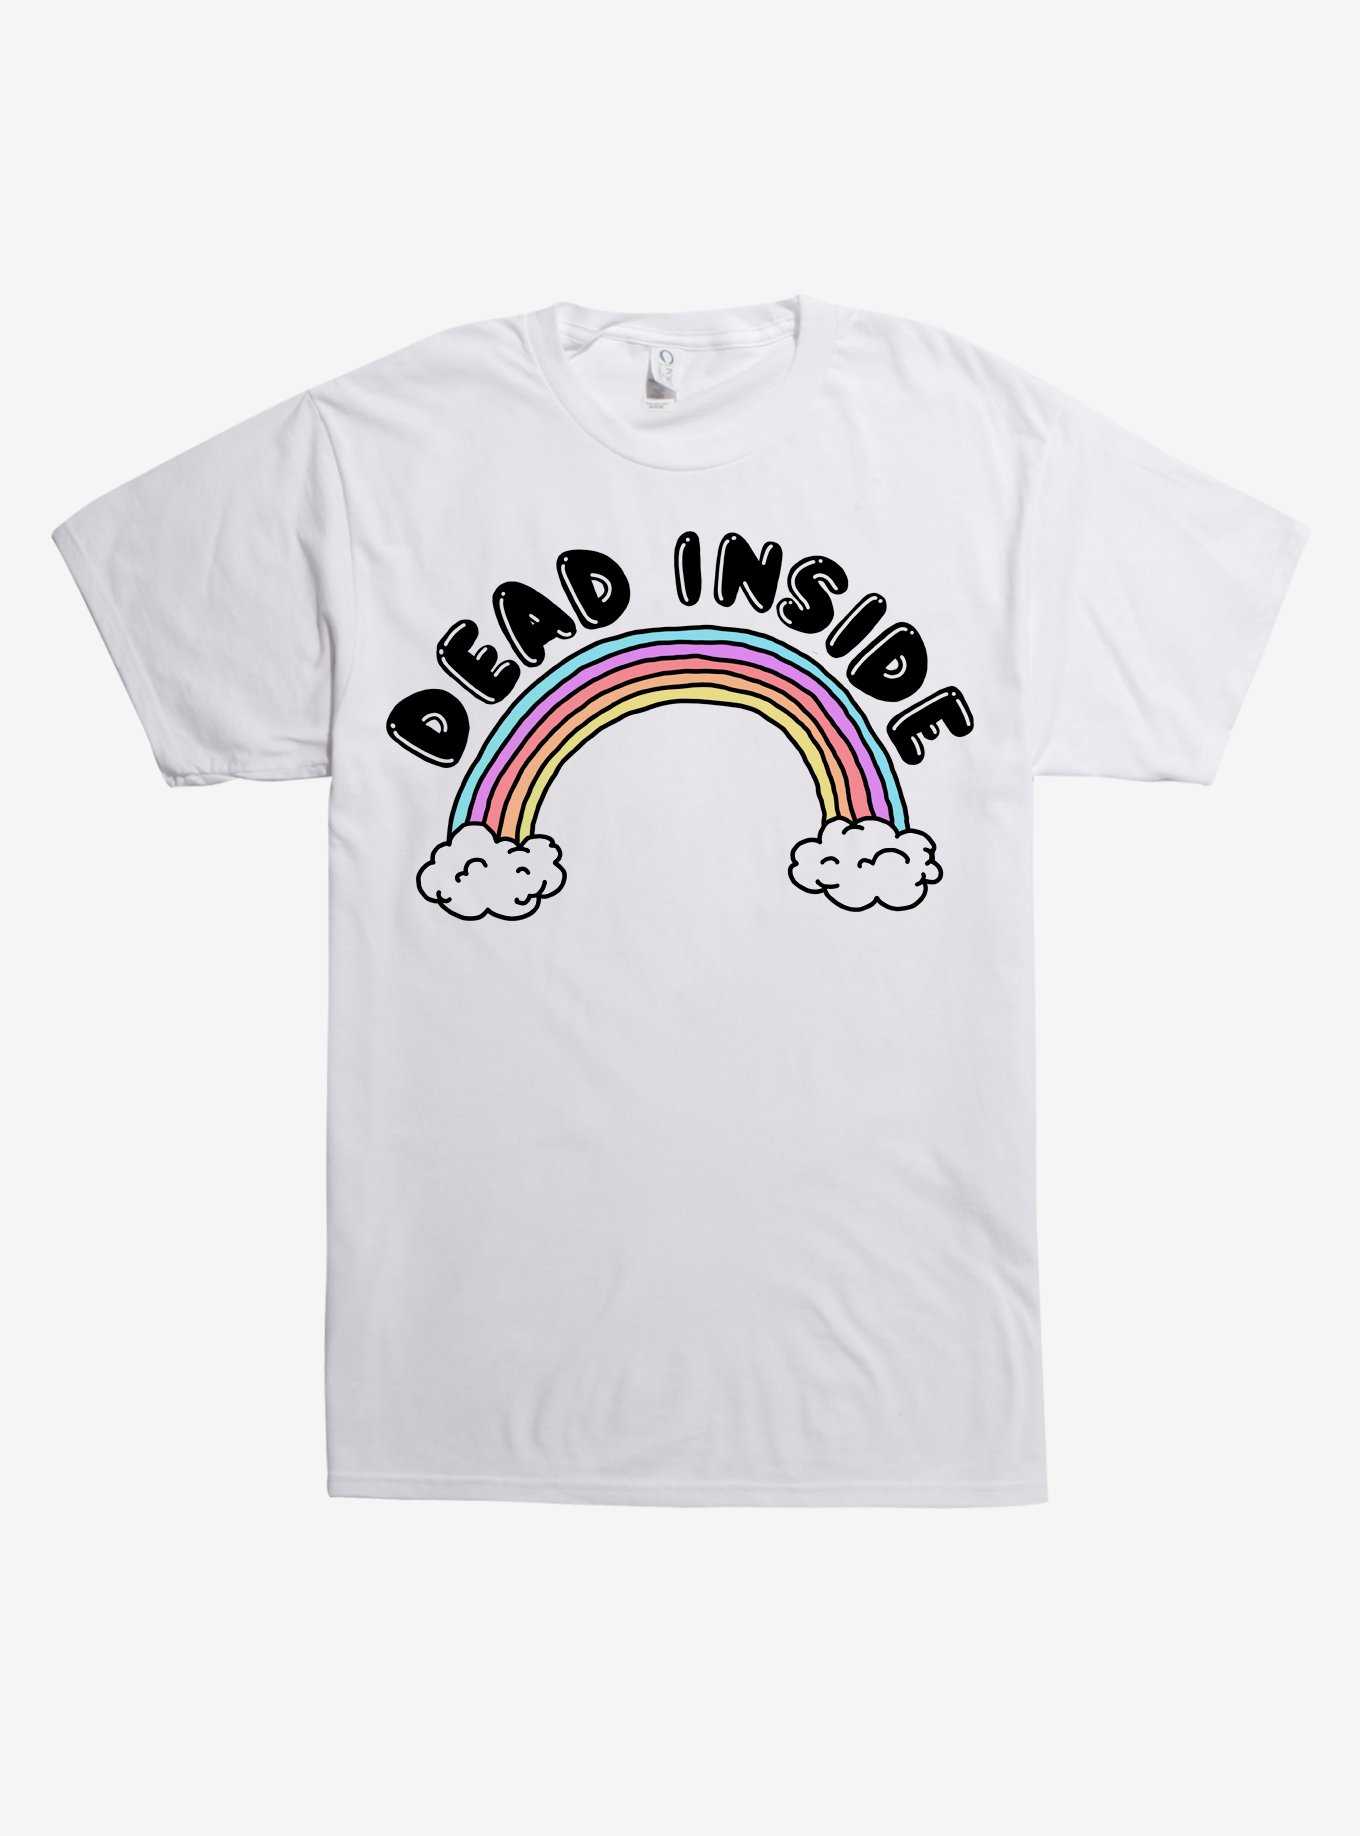 Dead Inside T-Shirt, , hi-res